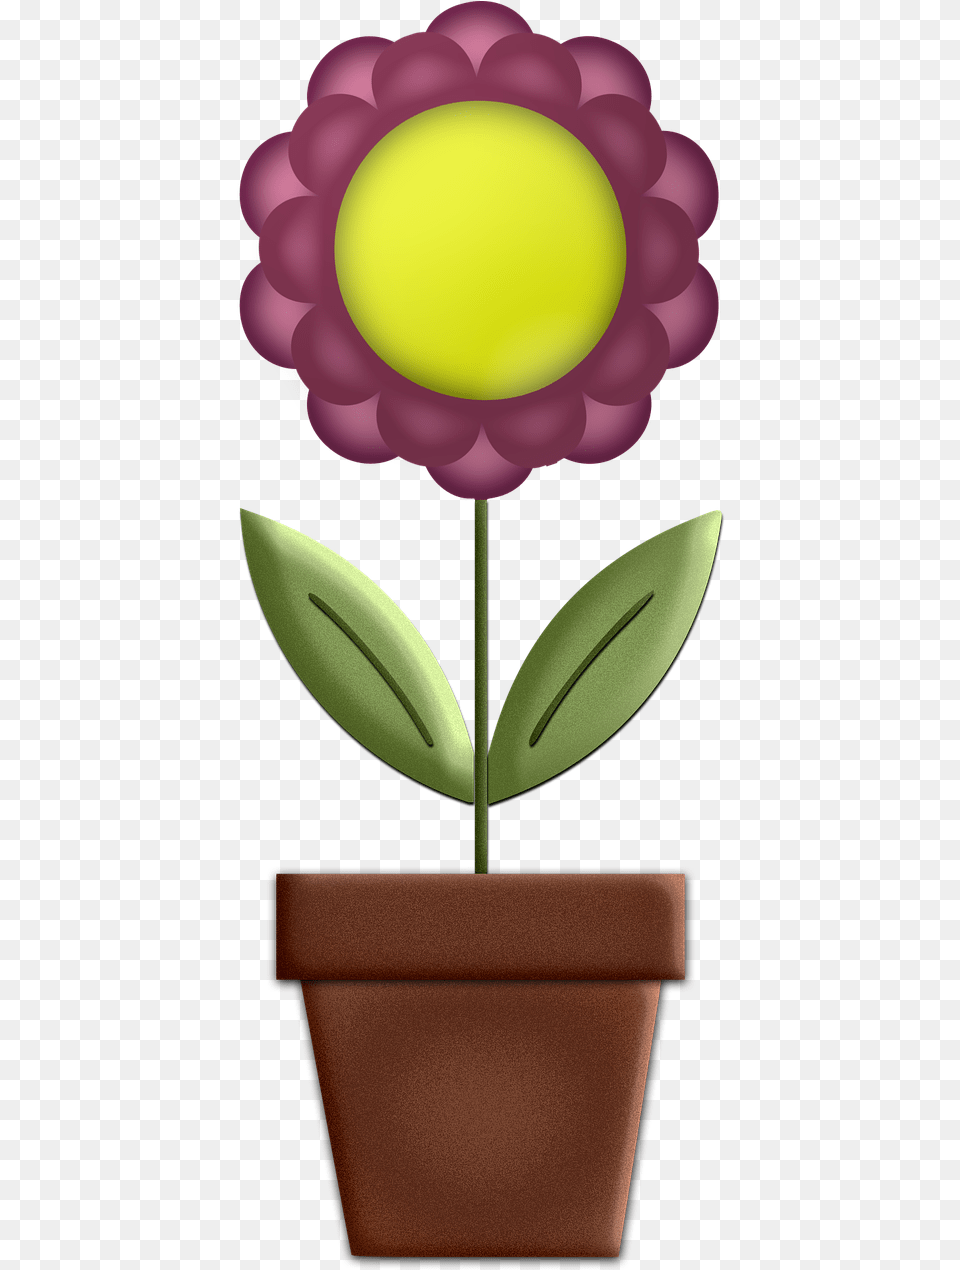 Flower Digital Art Design Picture Tulip, Flower Arrangement, Petal, Plant, Potted Plant Free Png